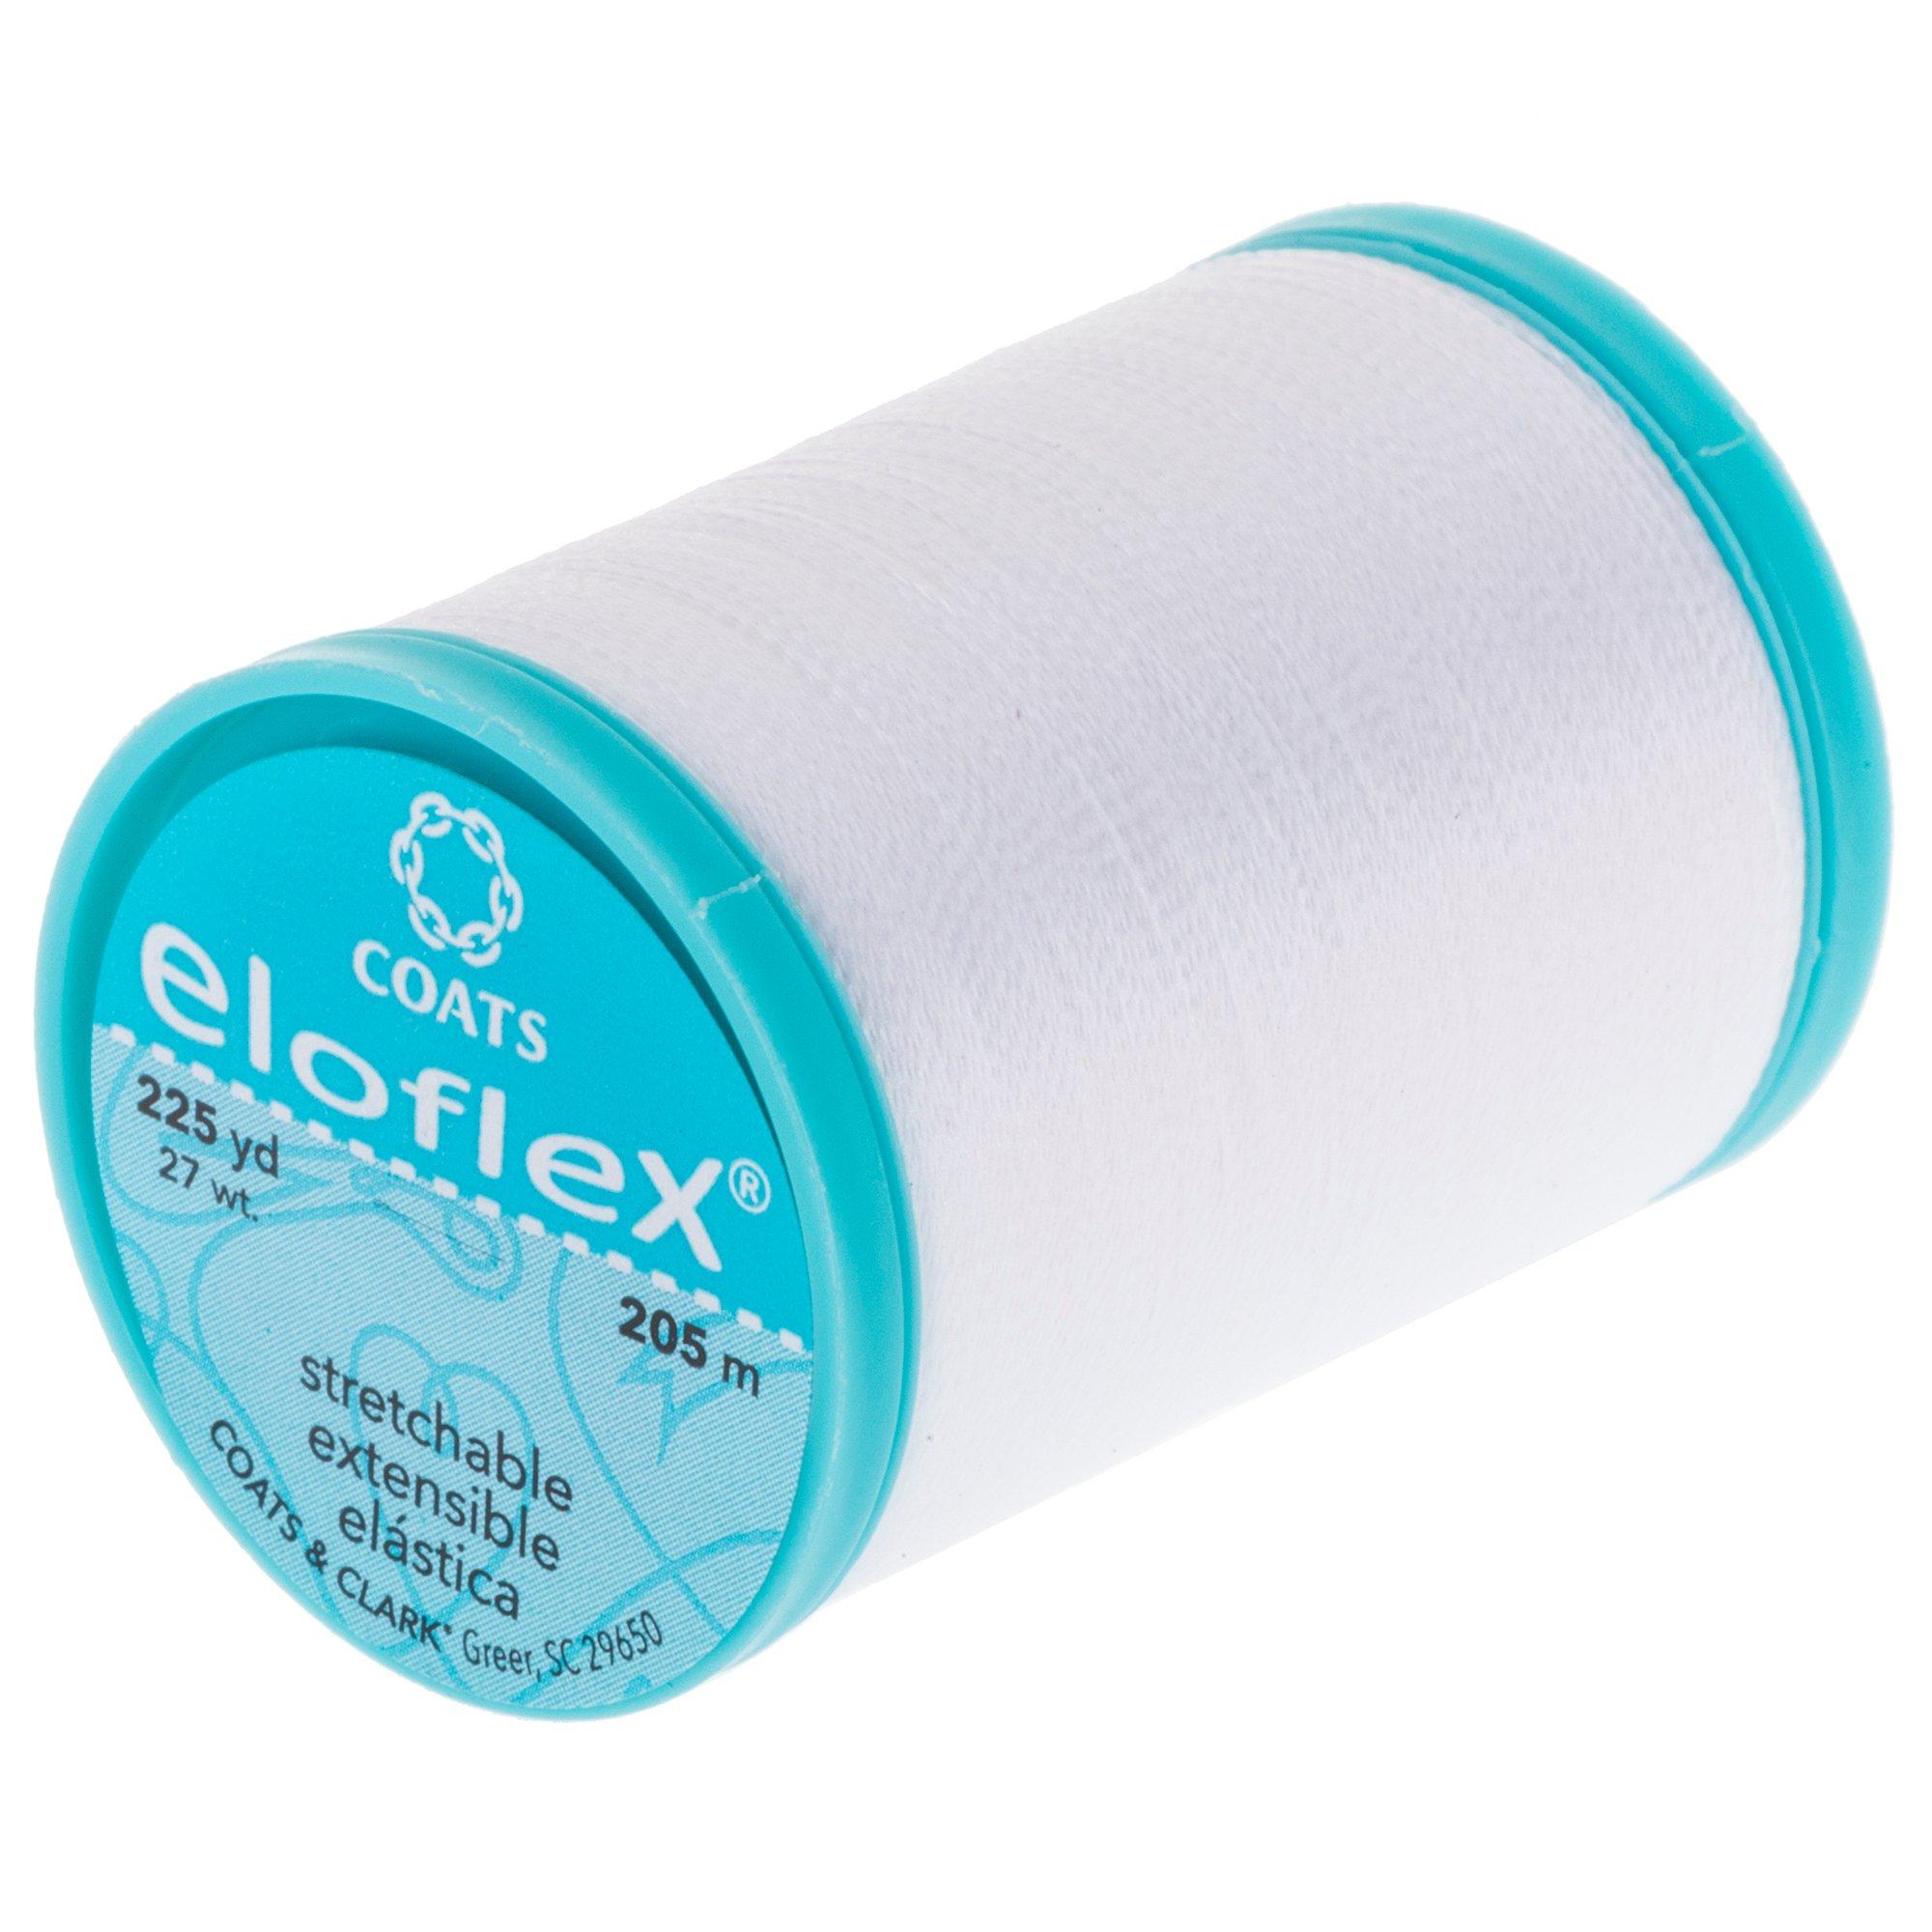 Coats Eloflex Stretch Thread 225yd Yale Blue